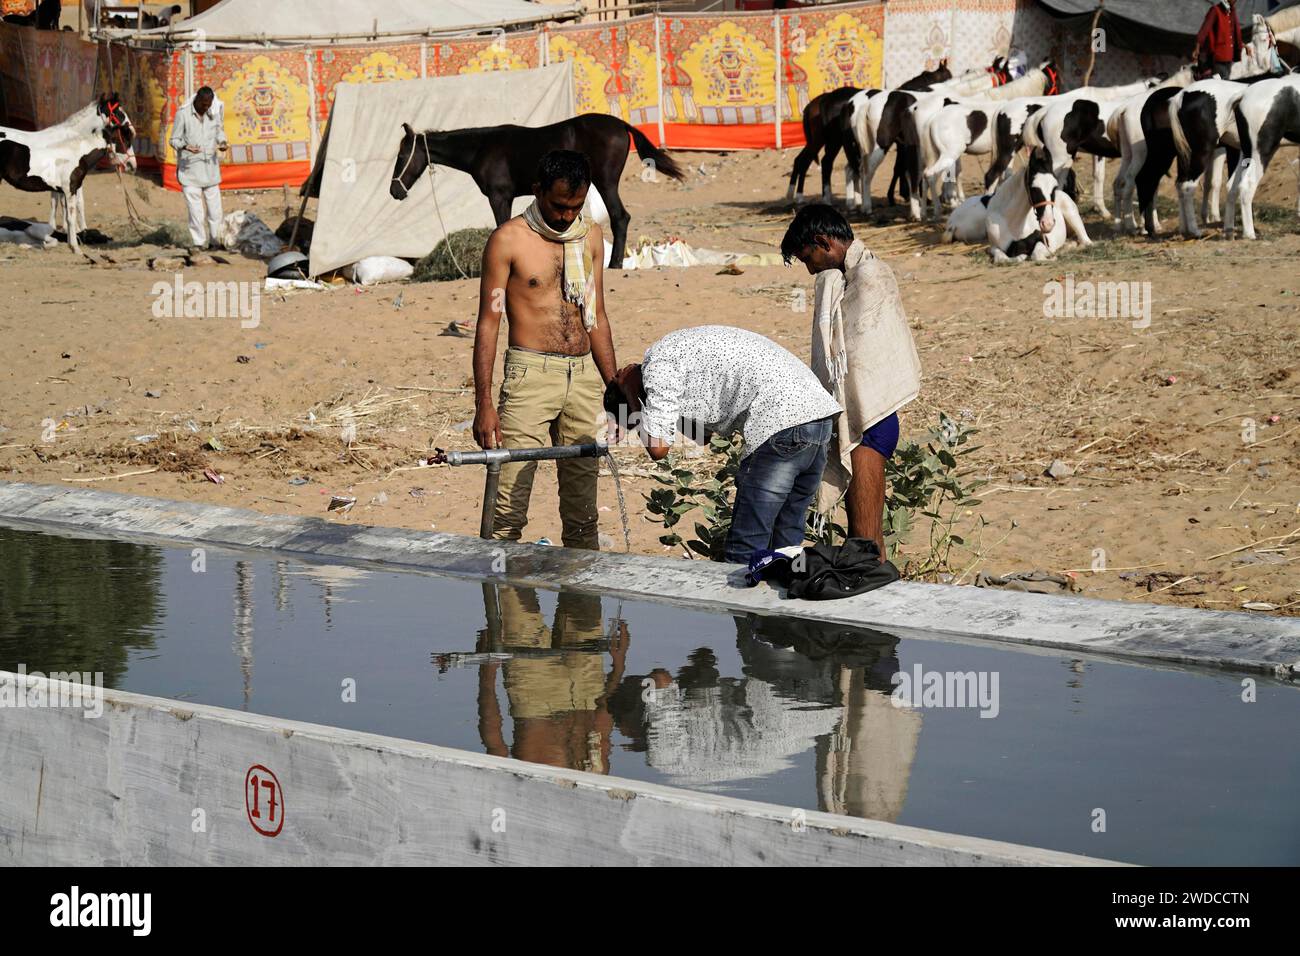 Impianti di lavaggio, mercato dei cammelli, fiera, gente, mercato dei matrimoni, animali, città deserta Pushkar, (Pushkar Camal Fair) Rajasthan, India settentrionale, India Foto Stock